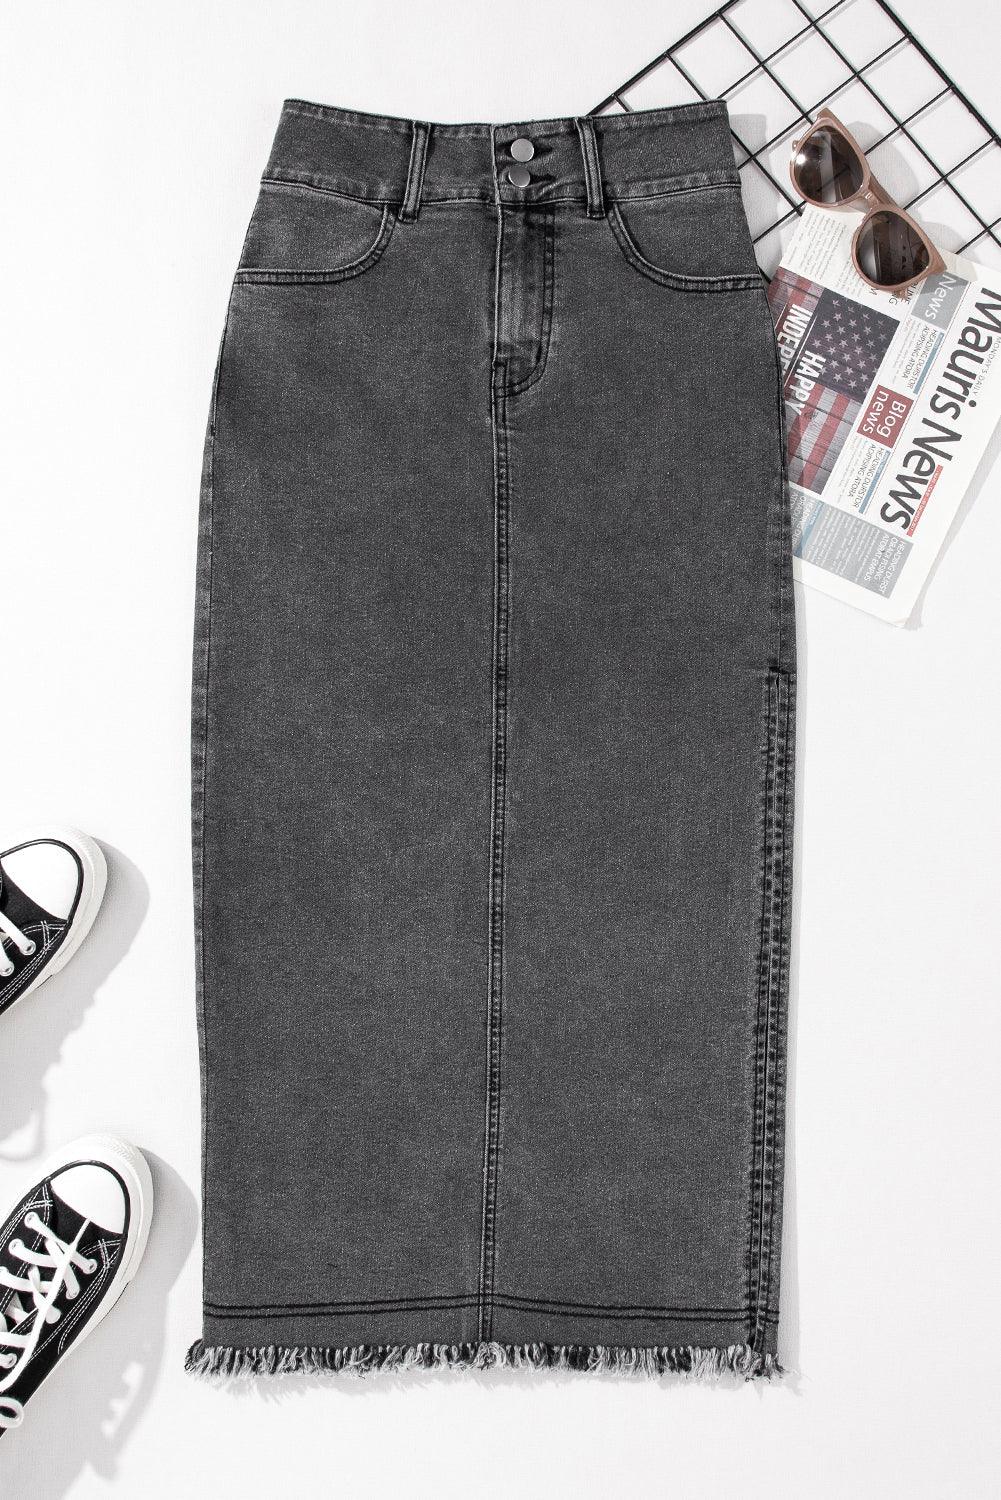 Black Raw Edge Side Slits Buttoned Midi Denim Skirt - L & M Kee, LLC